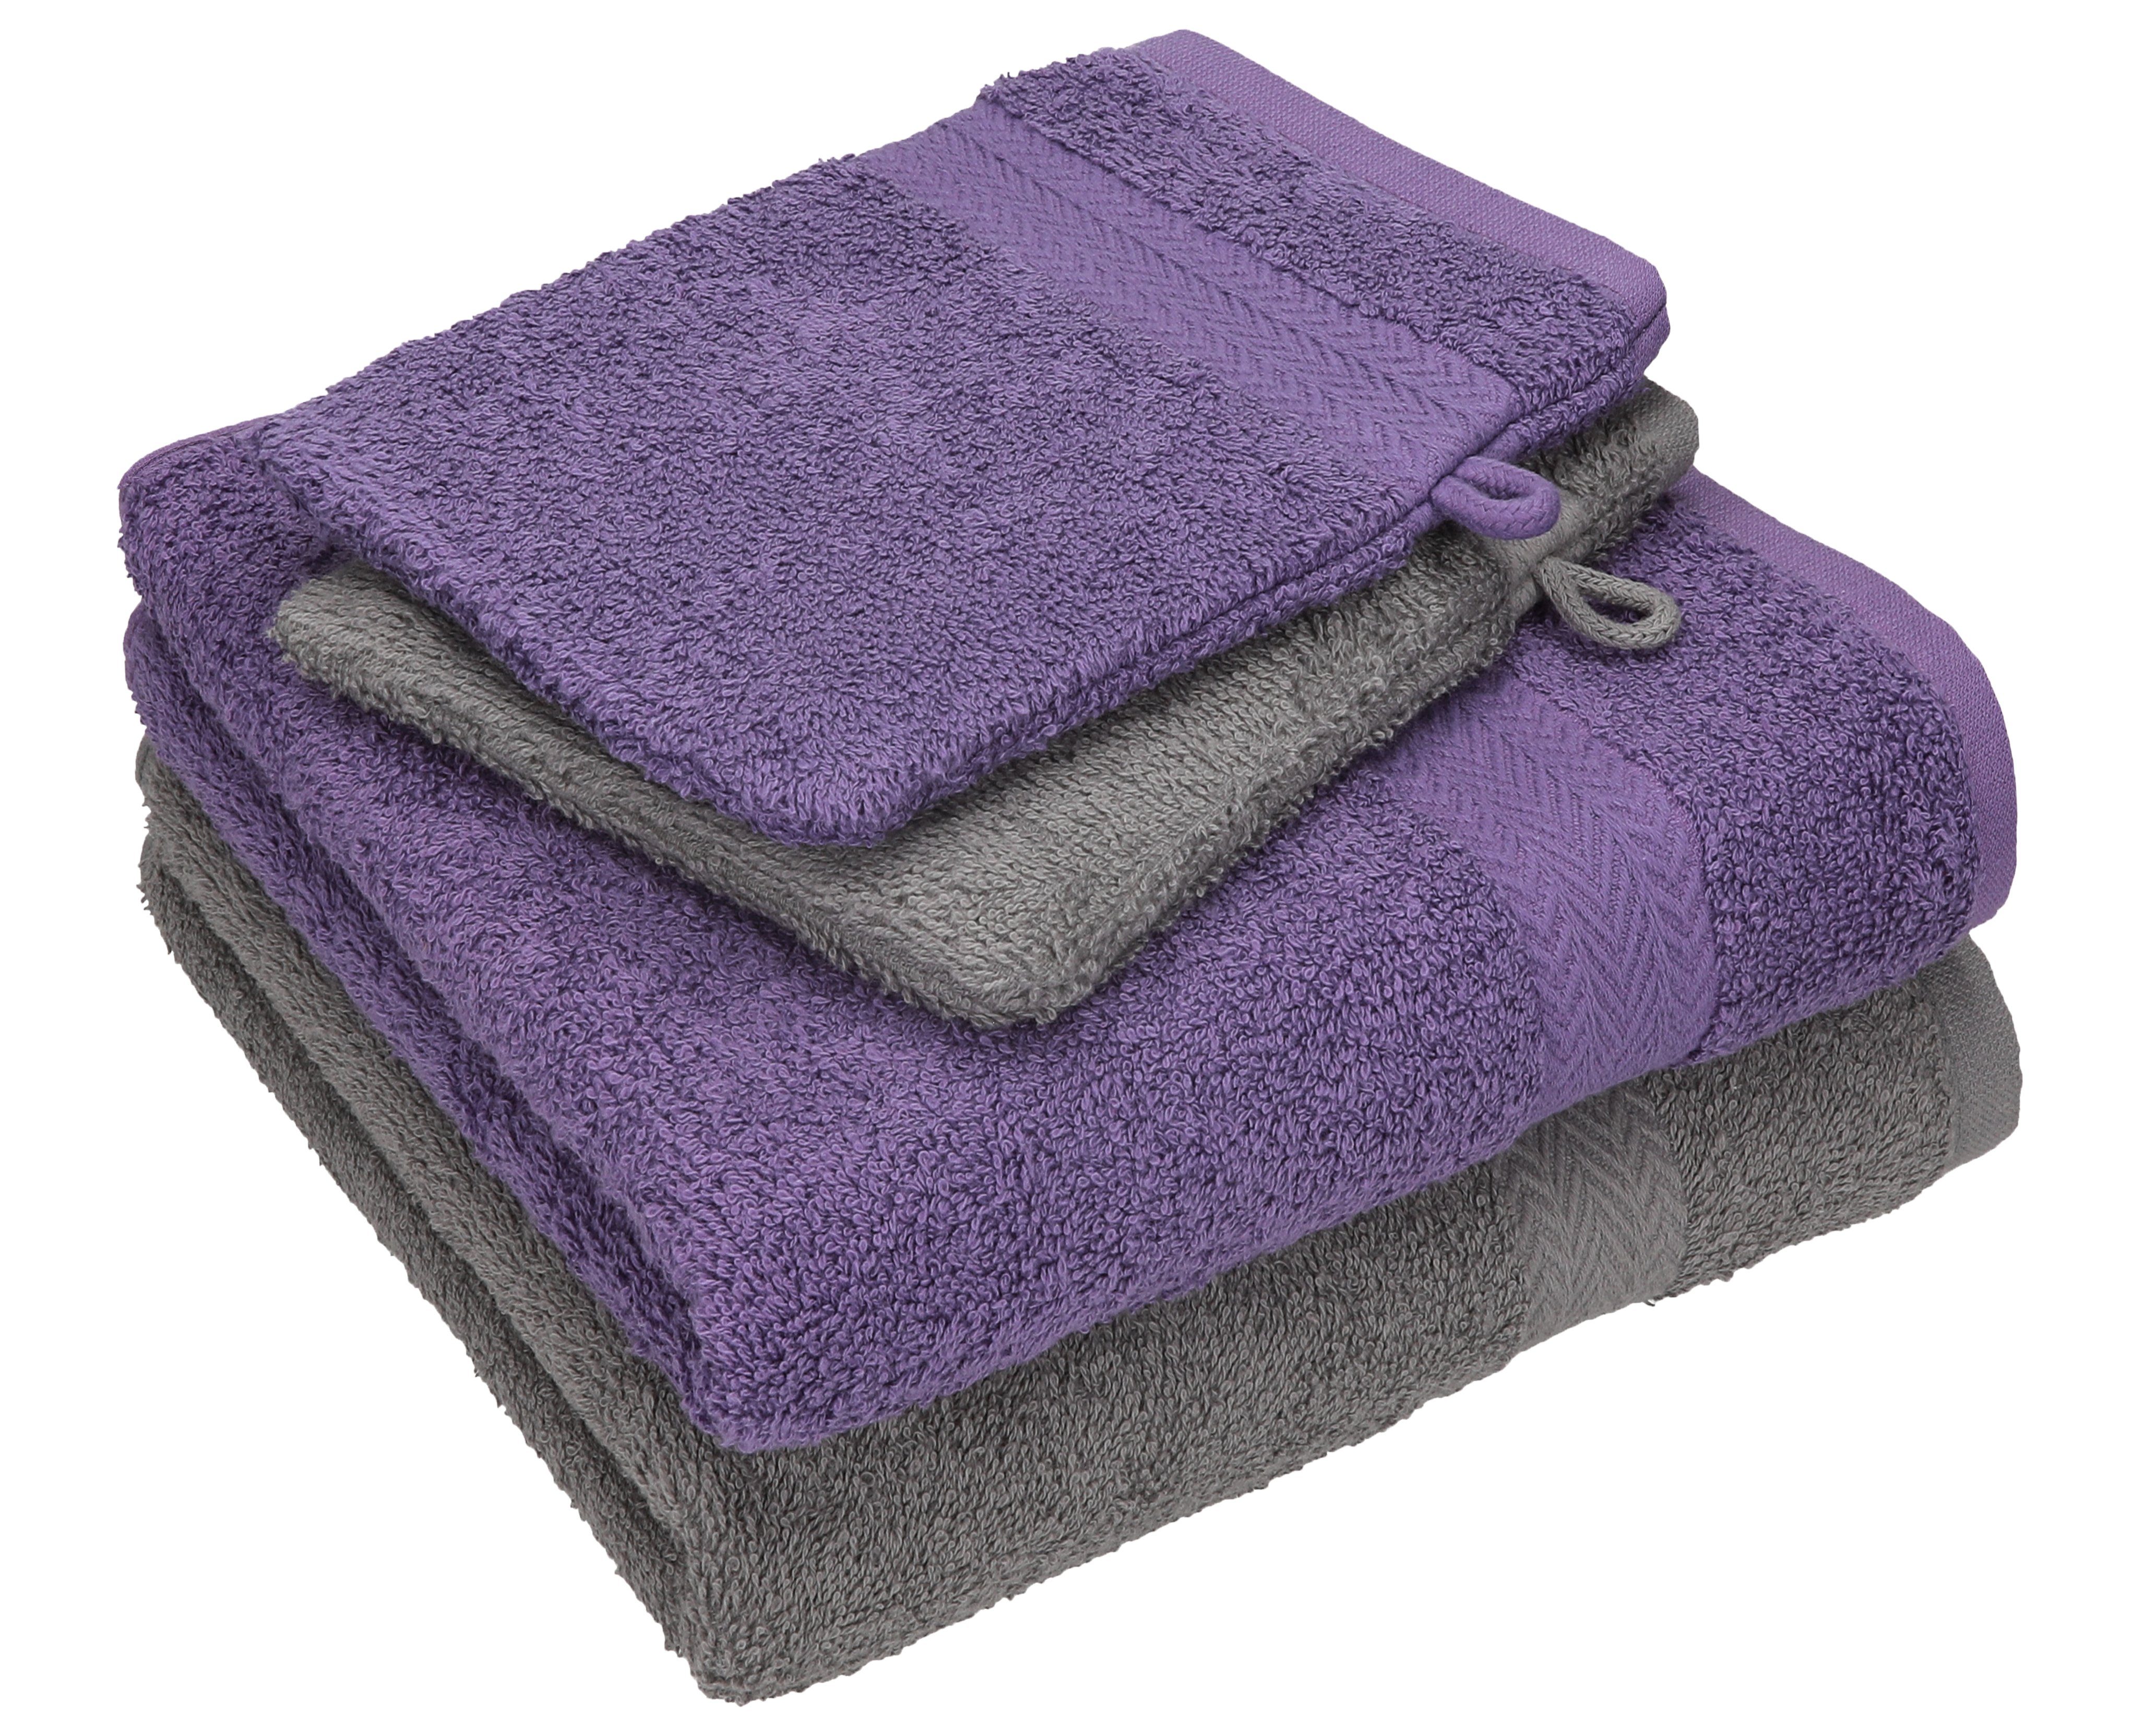 Betz Handtuch Set 4 TLG. Handtuch Set Happy Pack 100% Baumwolle 2 Handtücher 2 Waschhandschuhe, 100% Baumwolle anthrazit grau - lila